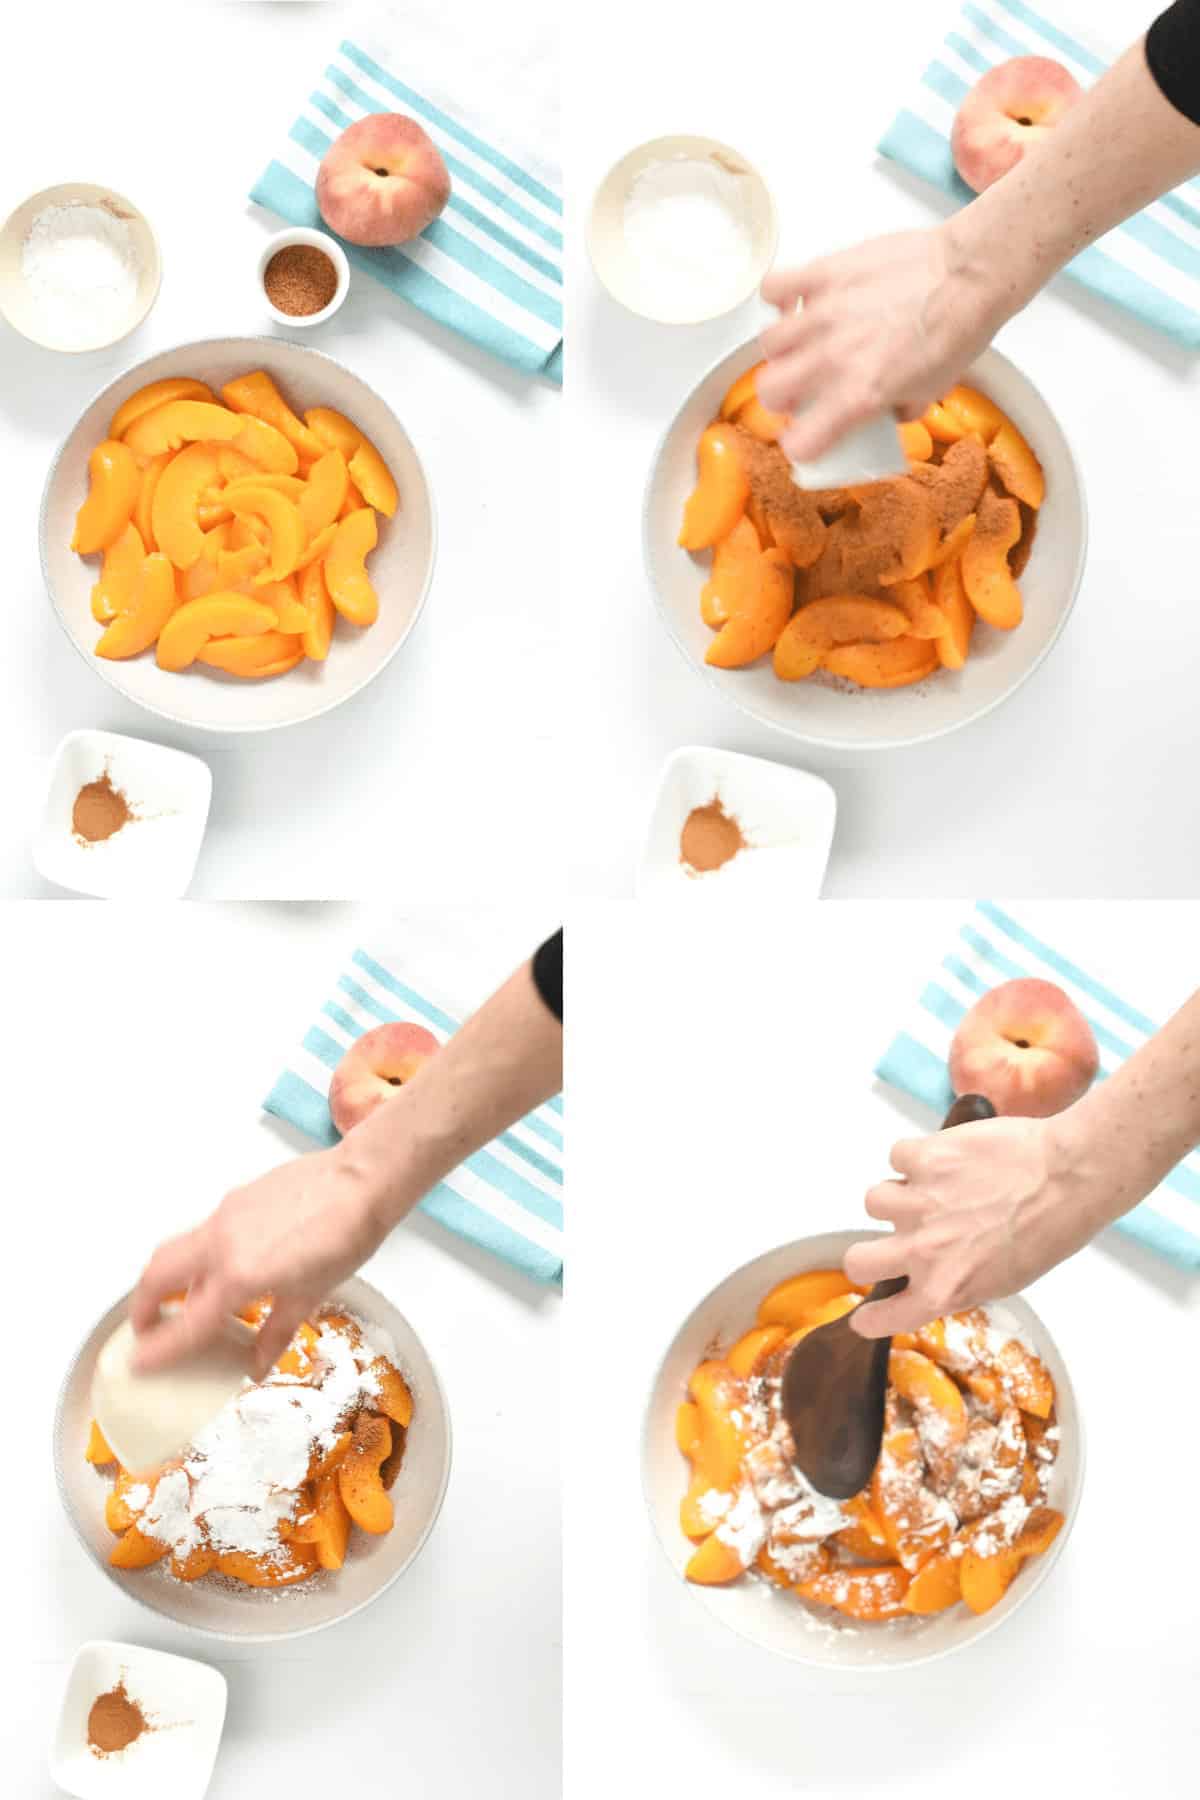 How to make peach cobbler